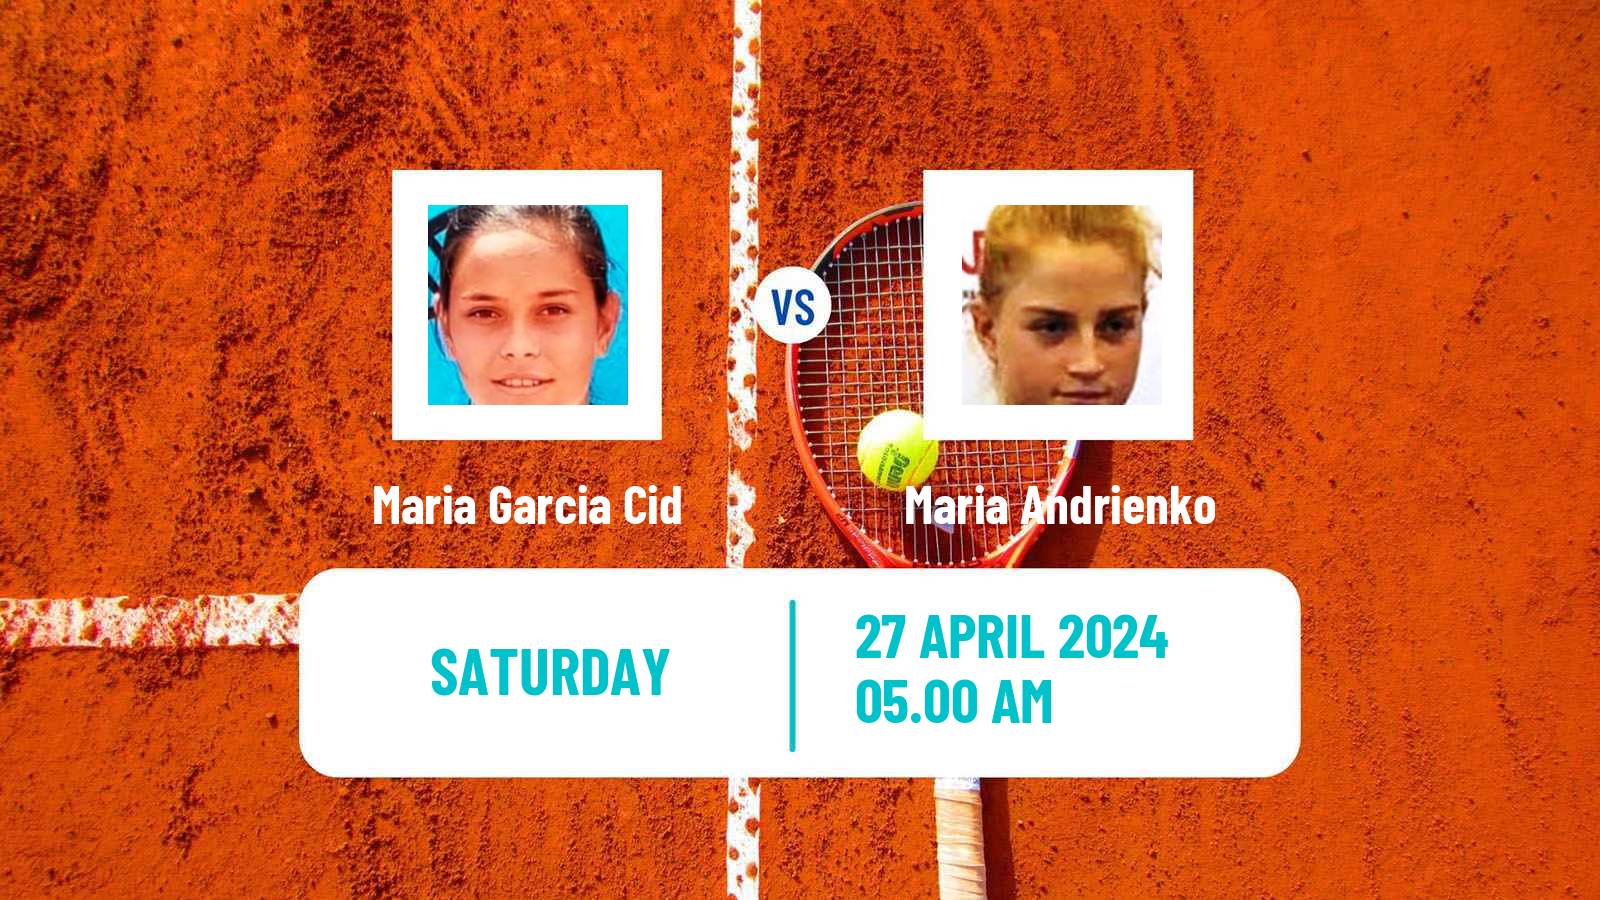 Tennis ITF W15 Telde 4 Women Maria Garcia Cid - Maria Andrienko